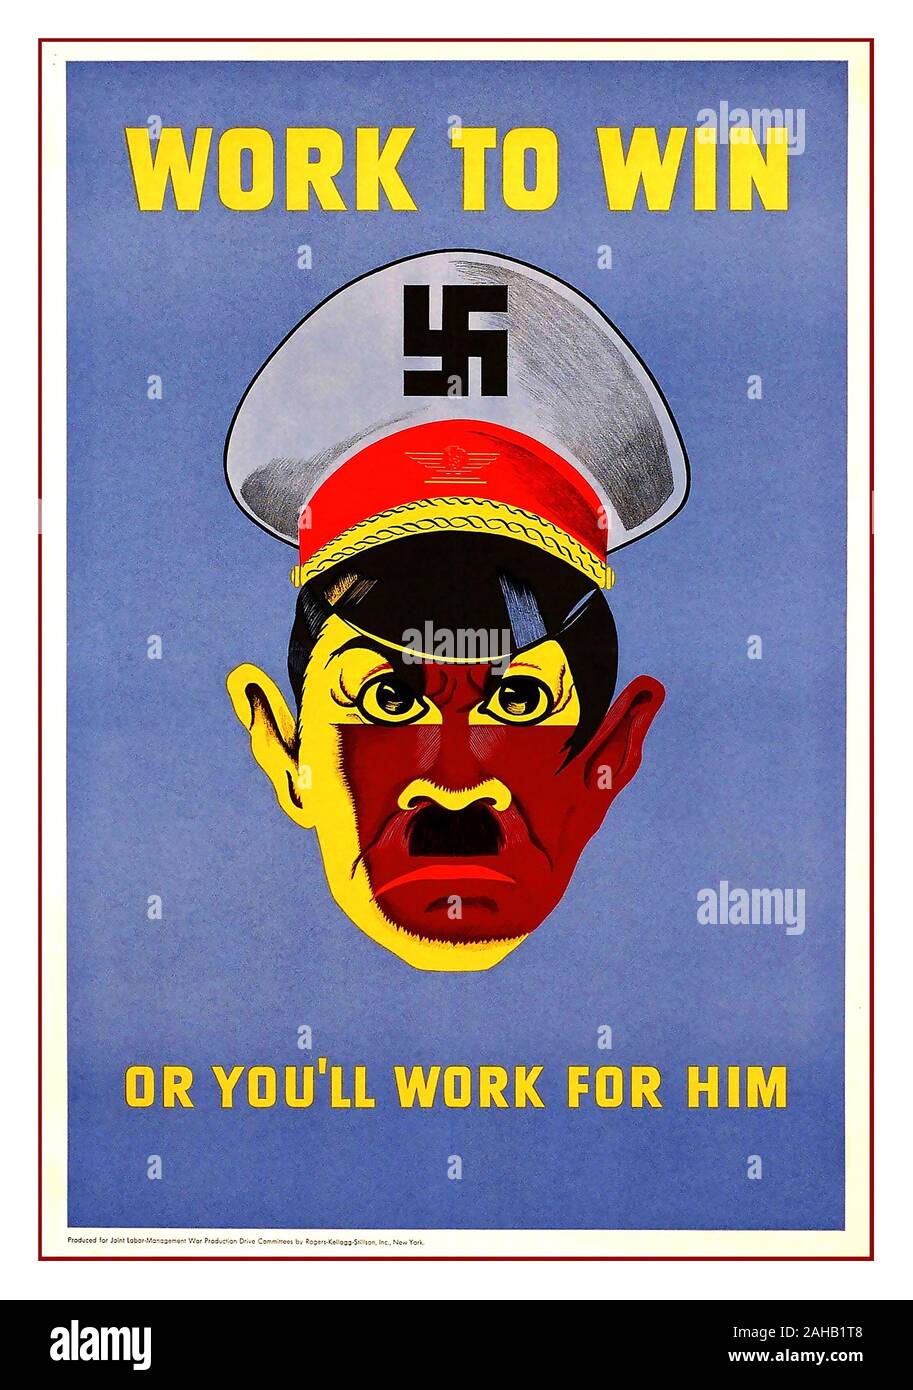 Vintage Weltkrieg Propaganda Poster mit Adolf Hitler und Hakenkreuz Army Cap cartoon' Arbeit zu gewinnen'' oder Sie für Ihn arbeiten" Krieg Plakat erinnern, hart zu arbeiten, um den Krieg zu gewinnen Stockfoto